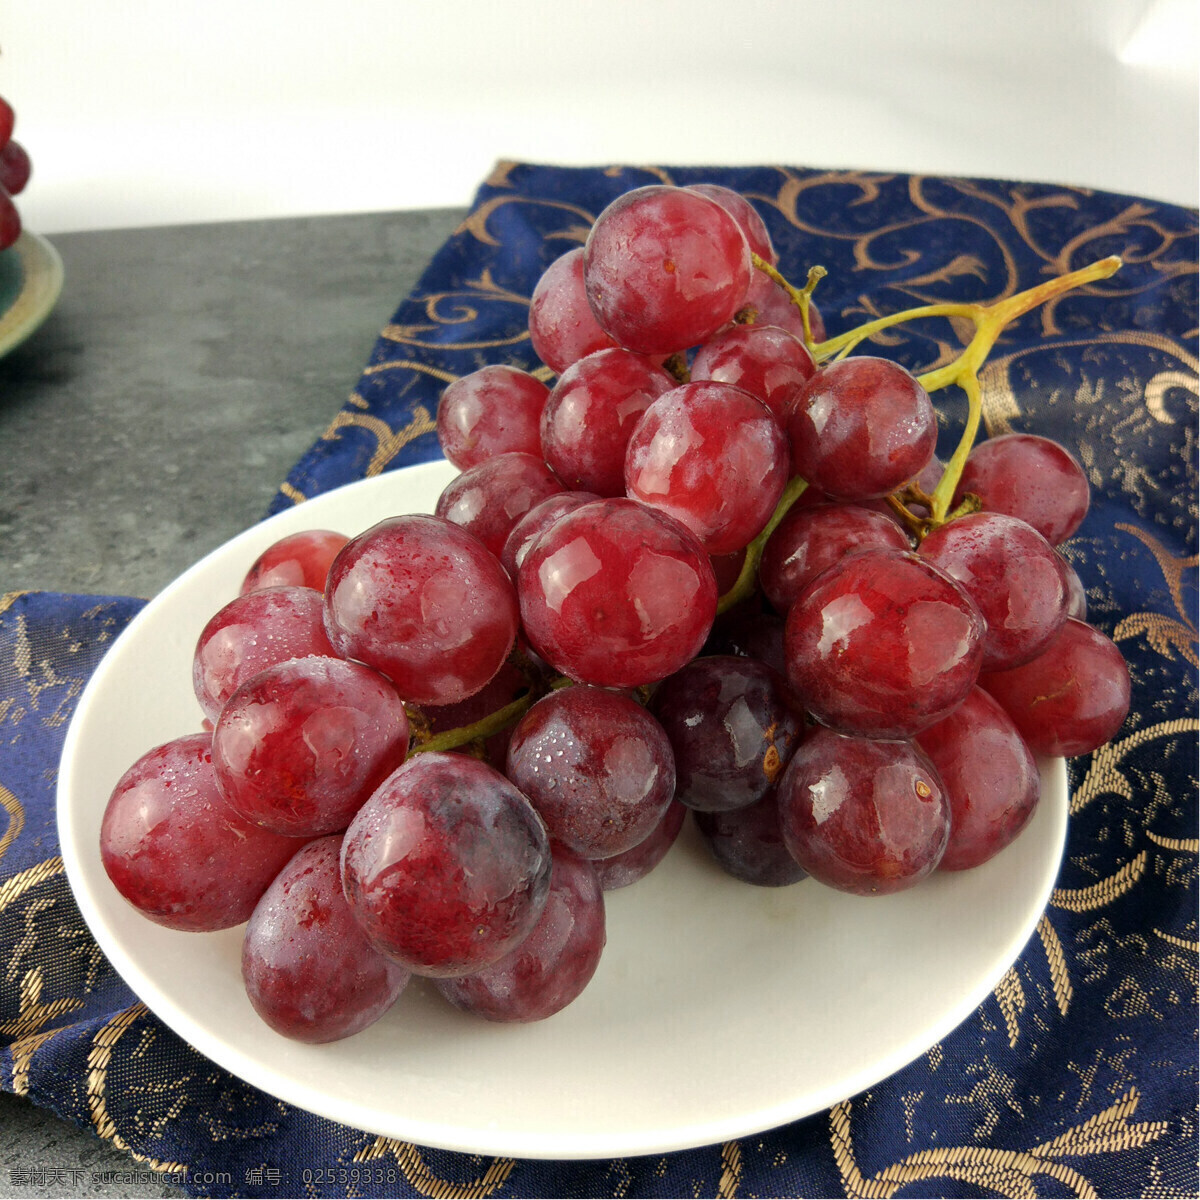 美国红提 红提 提子 葡萄 水果 生物世界